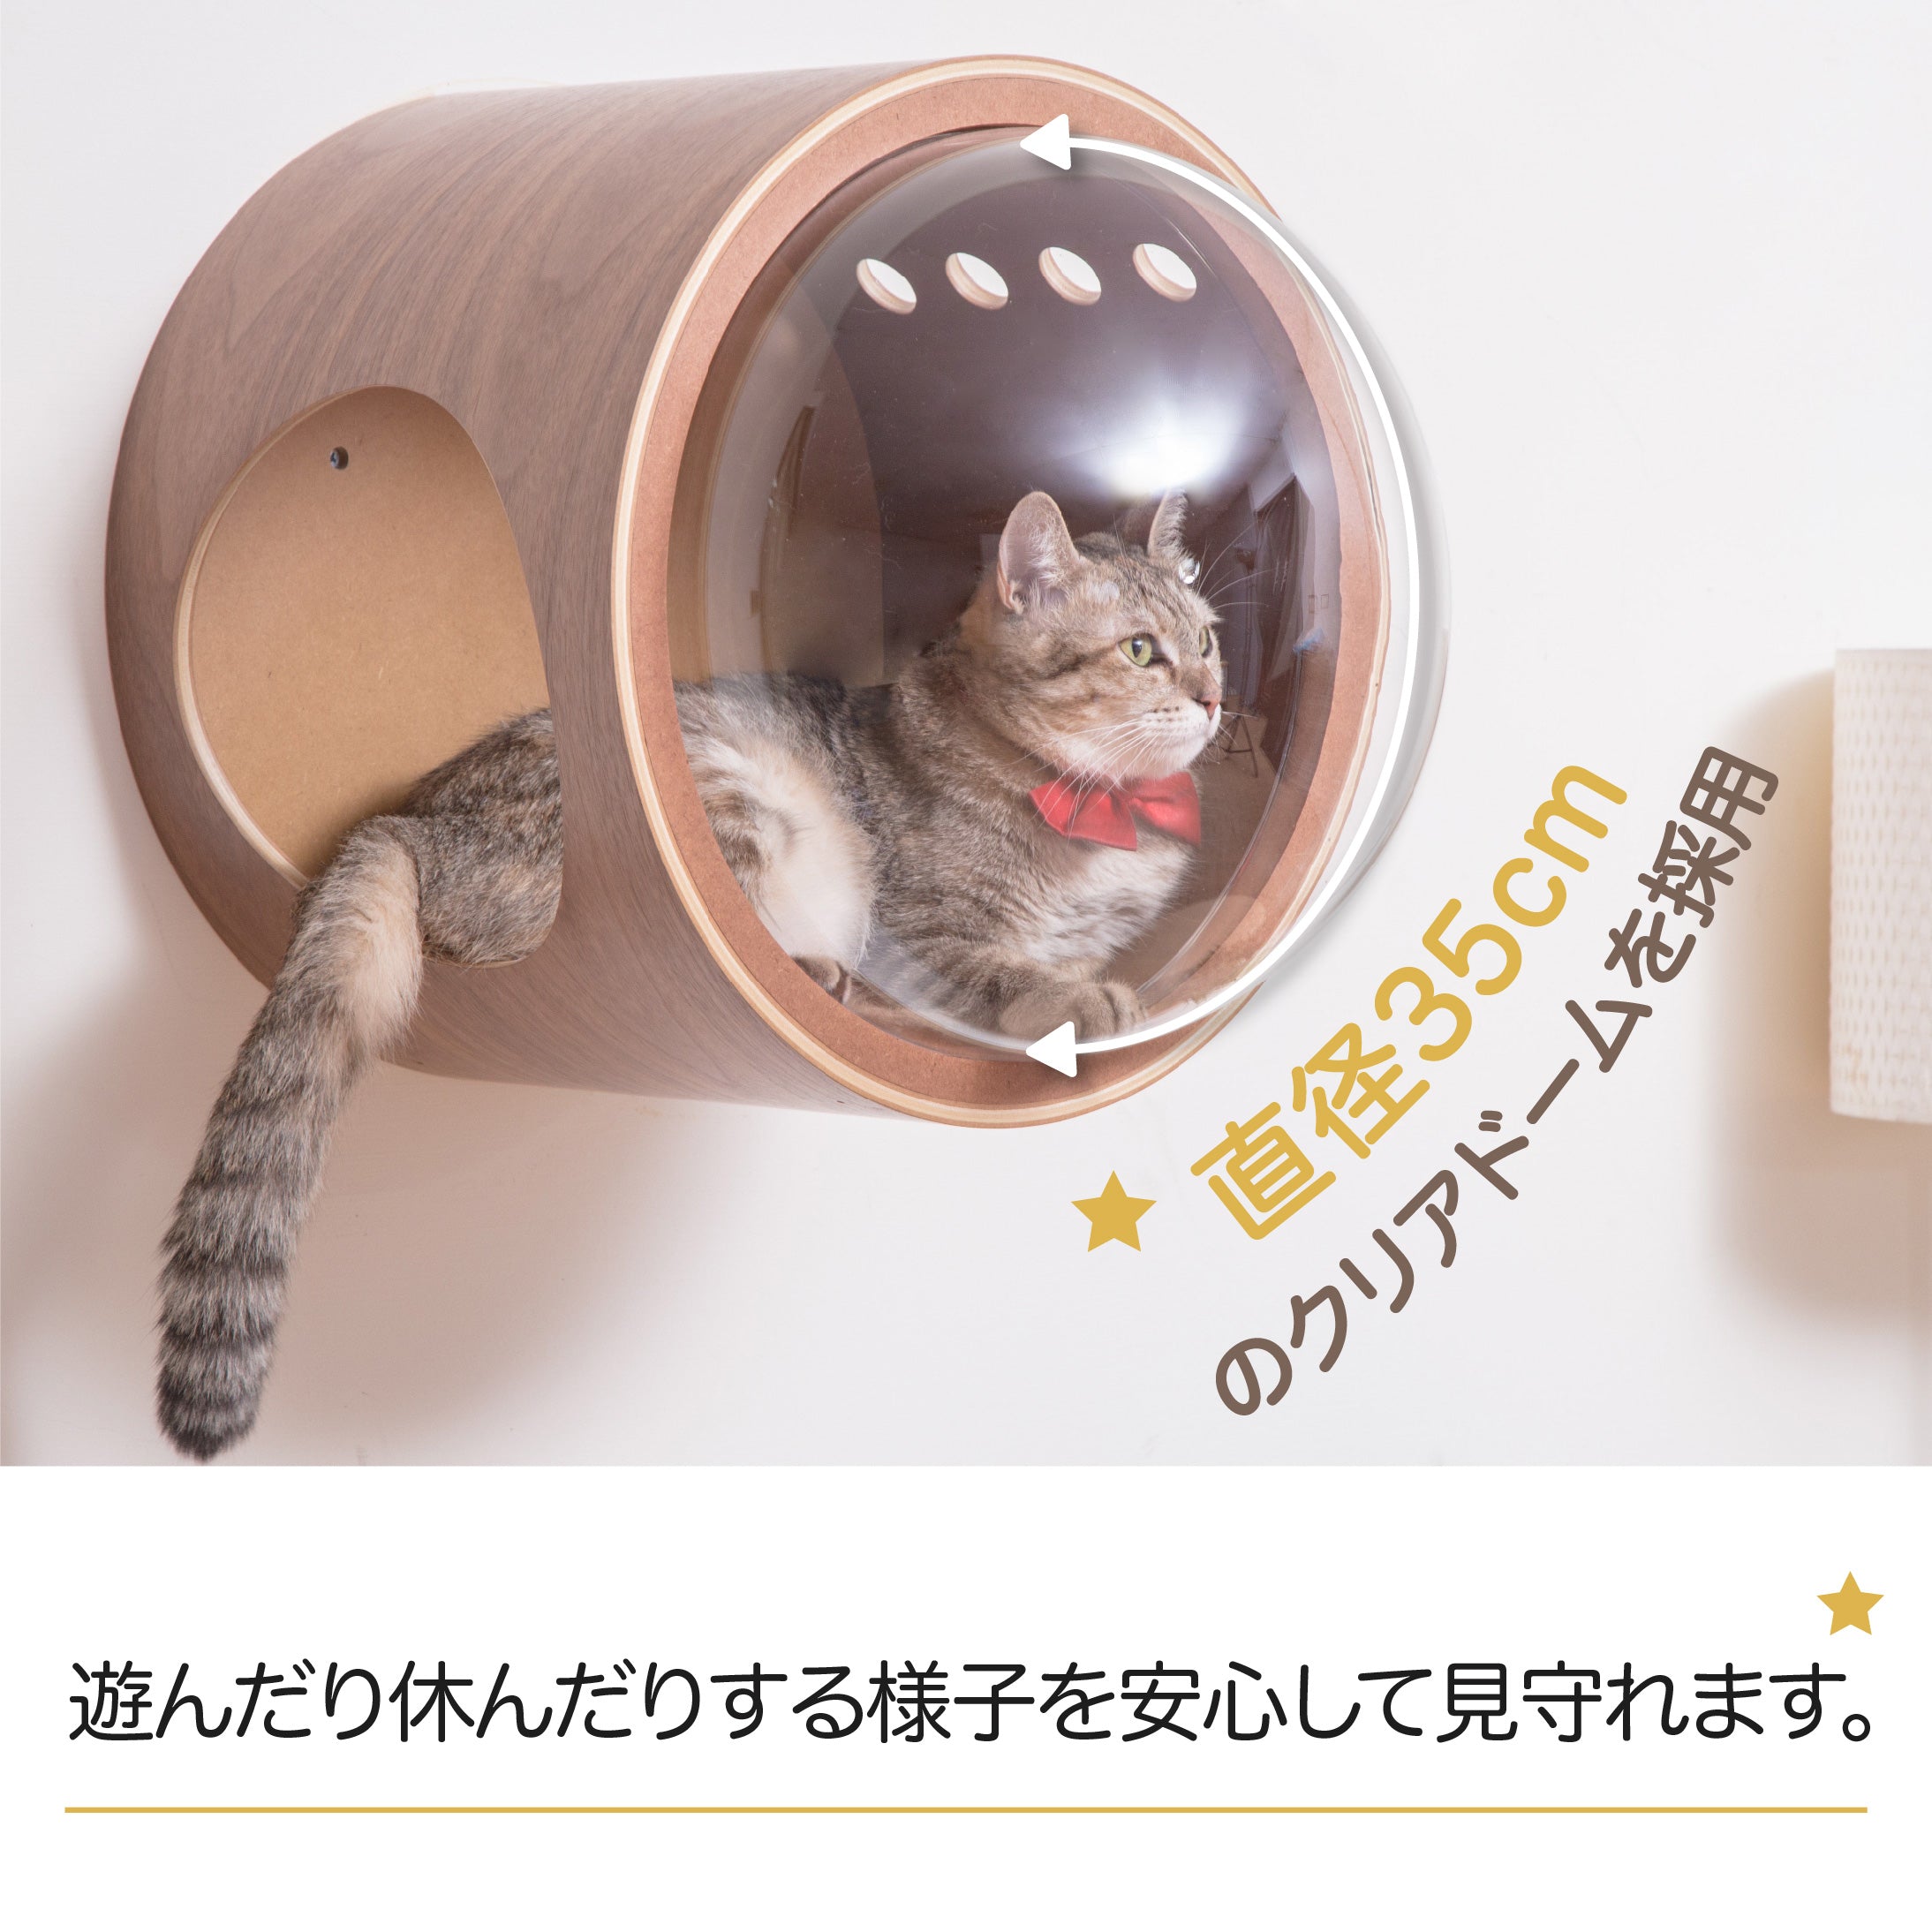 【猫用ベッド】MYZOO-宇宙船GAMMA/ホワイト